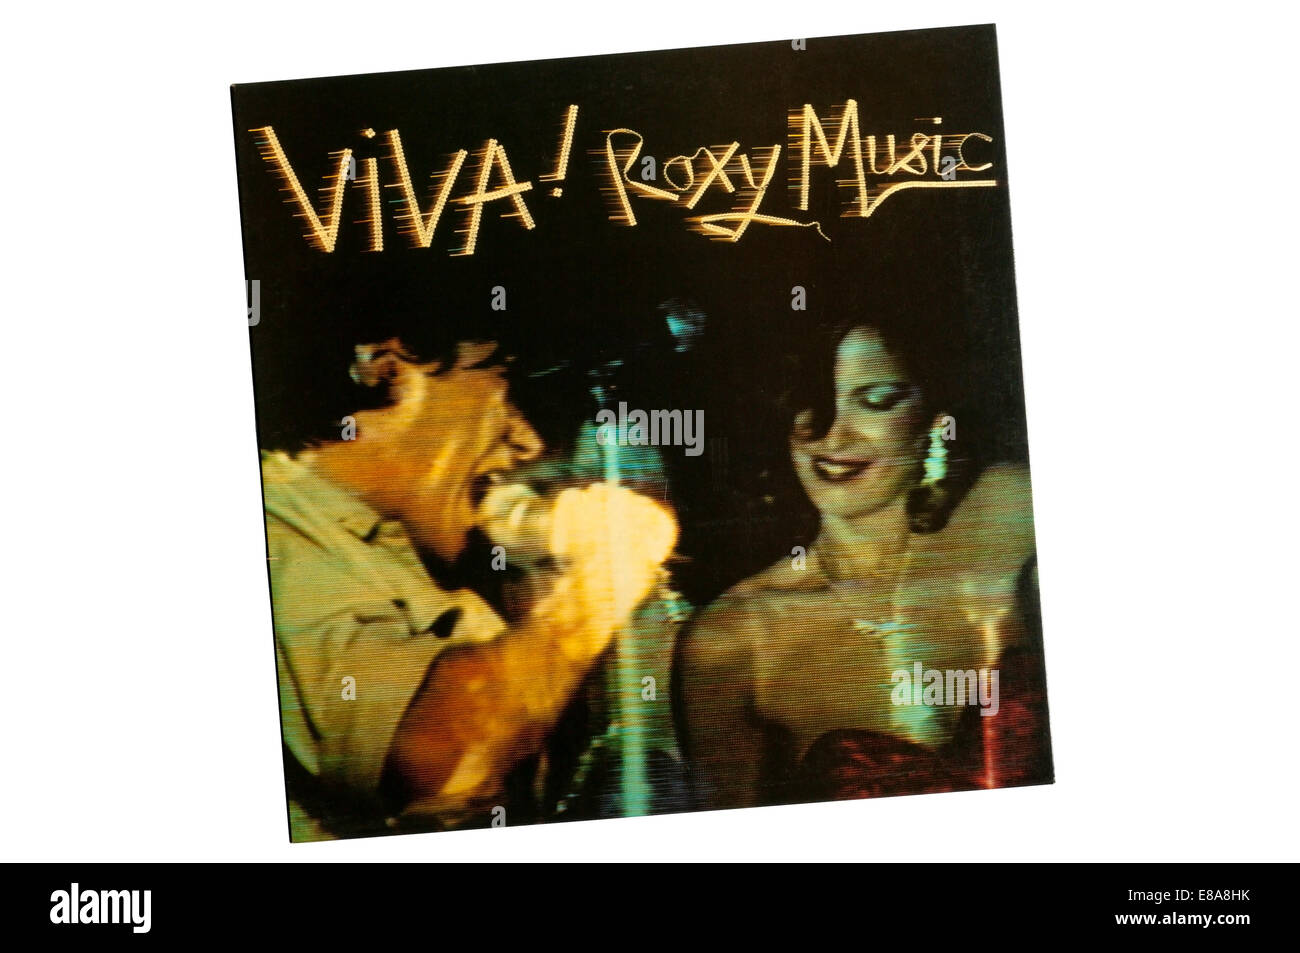 Viva! Roxy Music wurde das erste Livealbum von Roxy Music. Es wurde im August 1976 veröffentlicht. Stockfoto